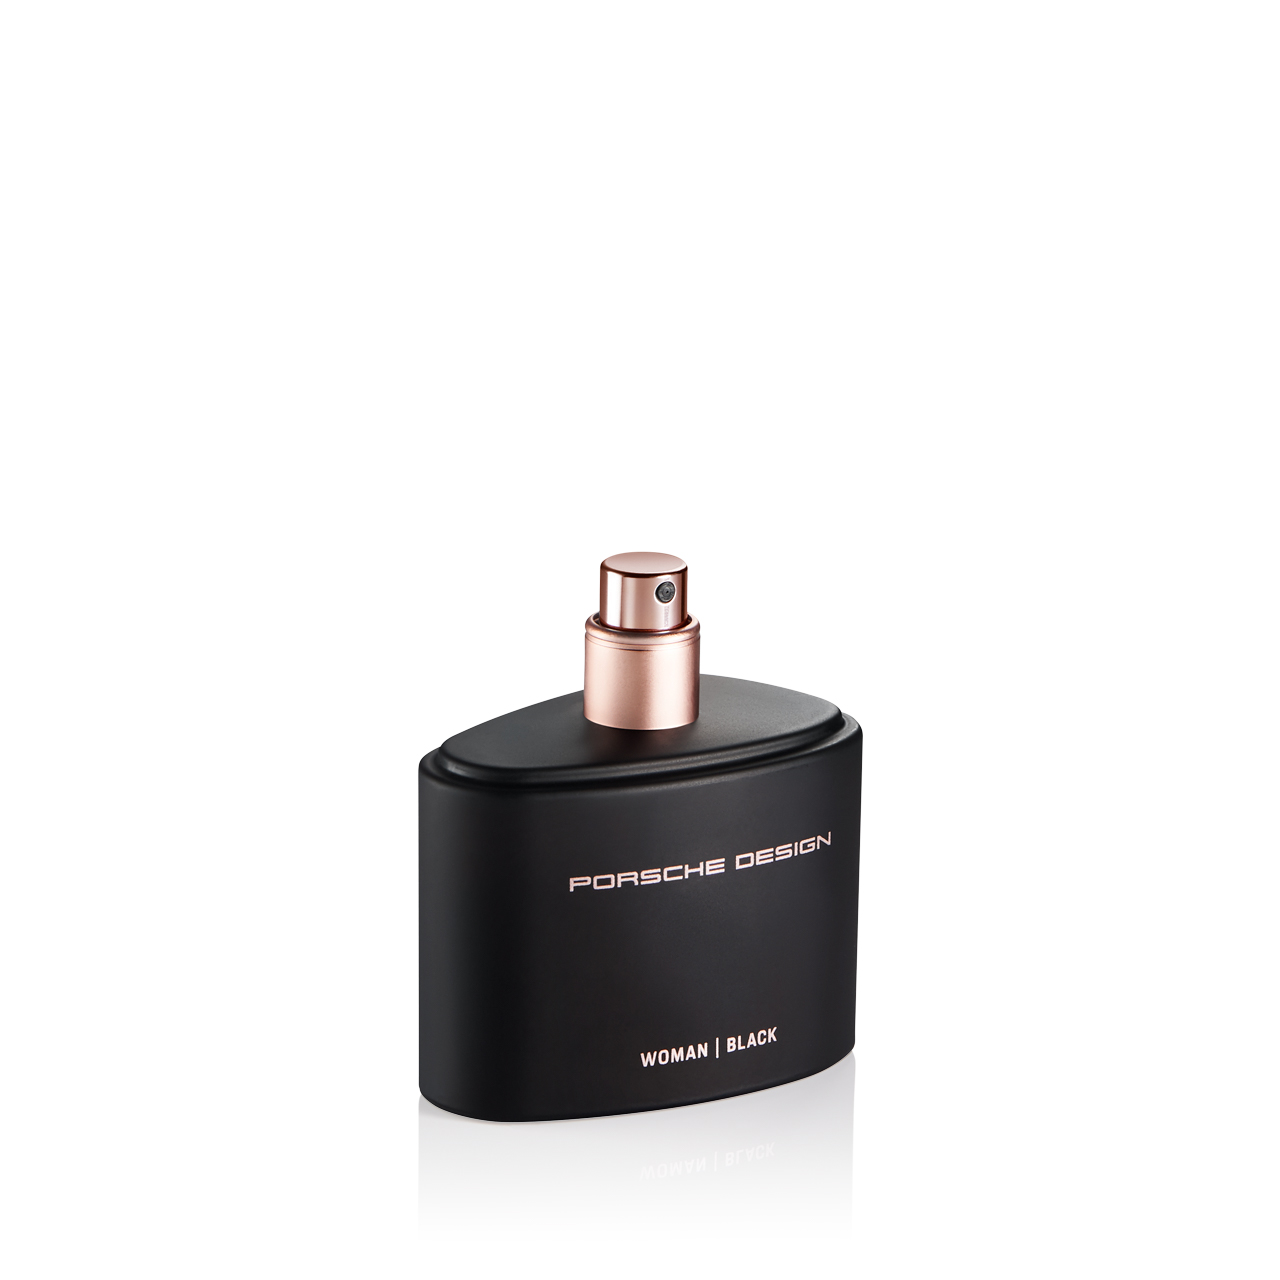 Porsche Design Woman | Black Eau de Parfum - Luxury Personal Care Products & Fragrances | Porsche Design Porsche Design